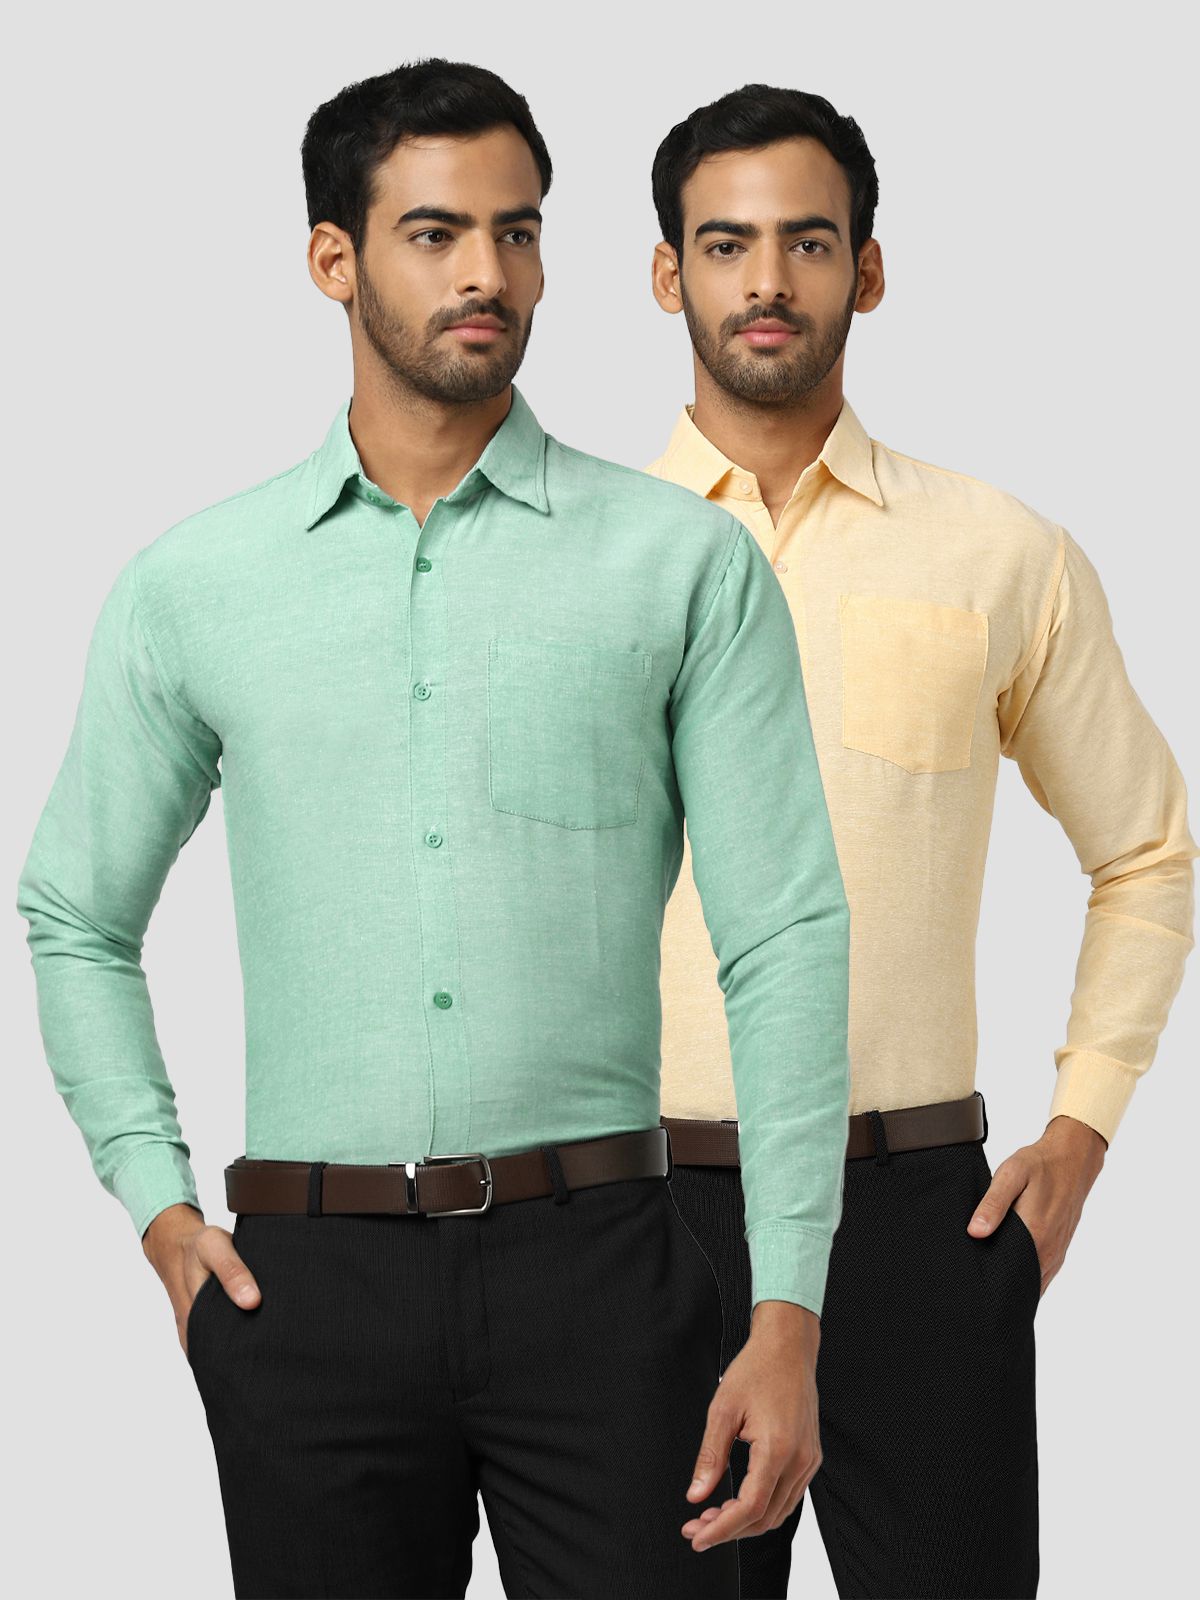     			DESHBANDHU DBK - Multicolor Cotton Regular Fit Men's Formal Shirt (Pack of 2)